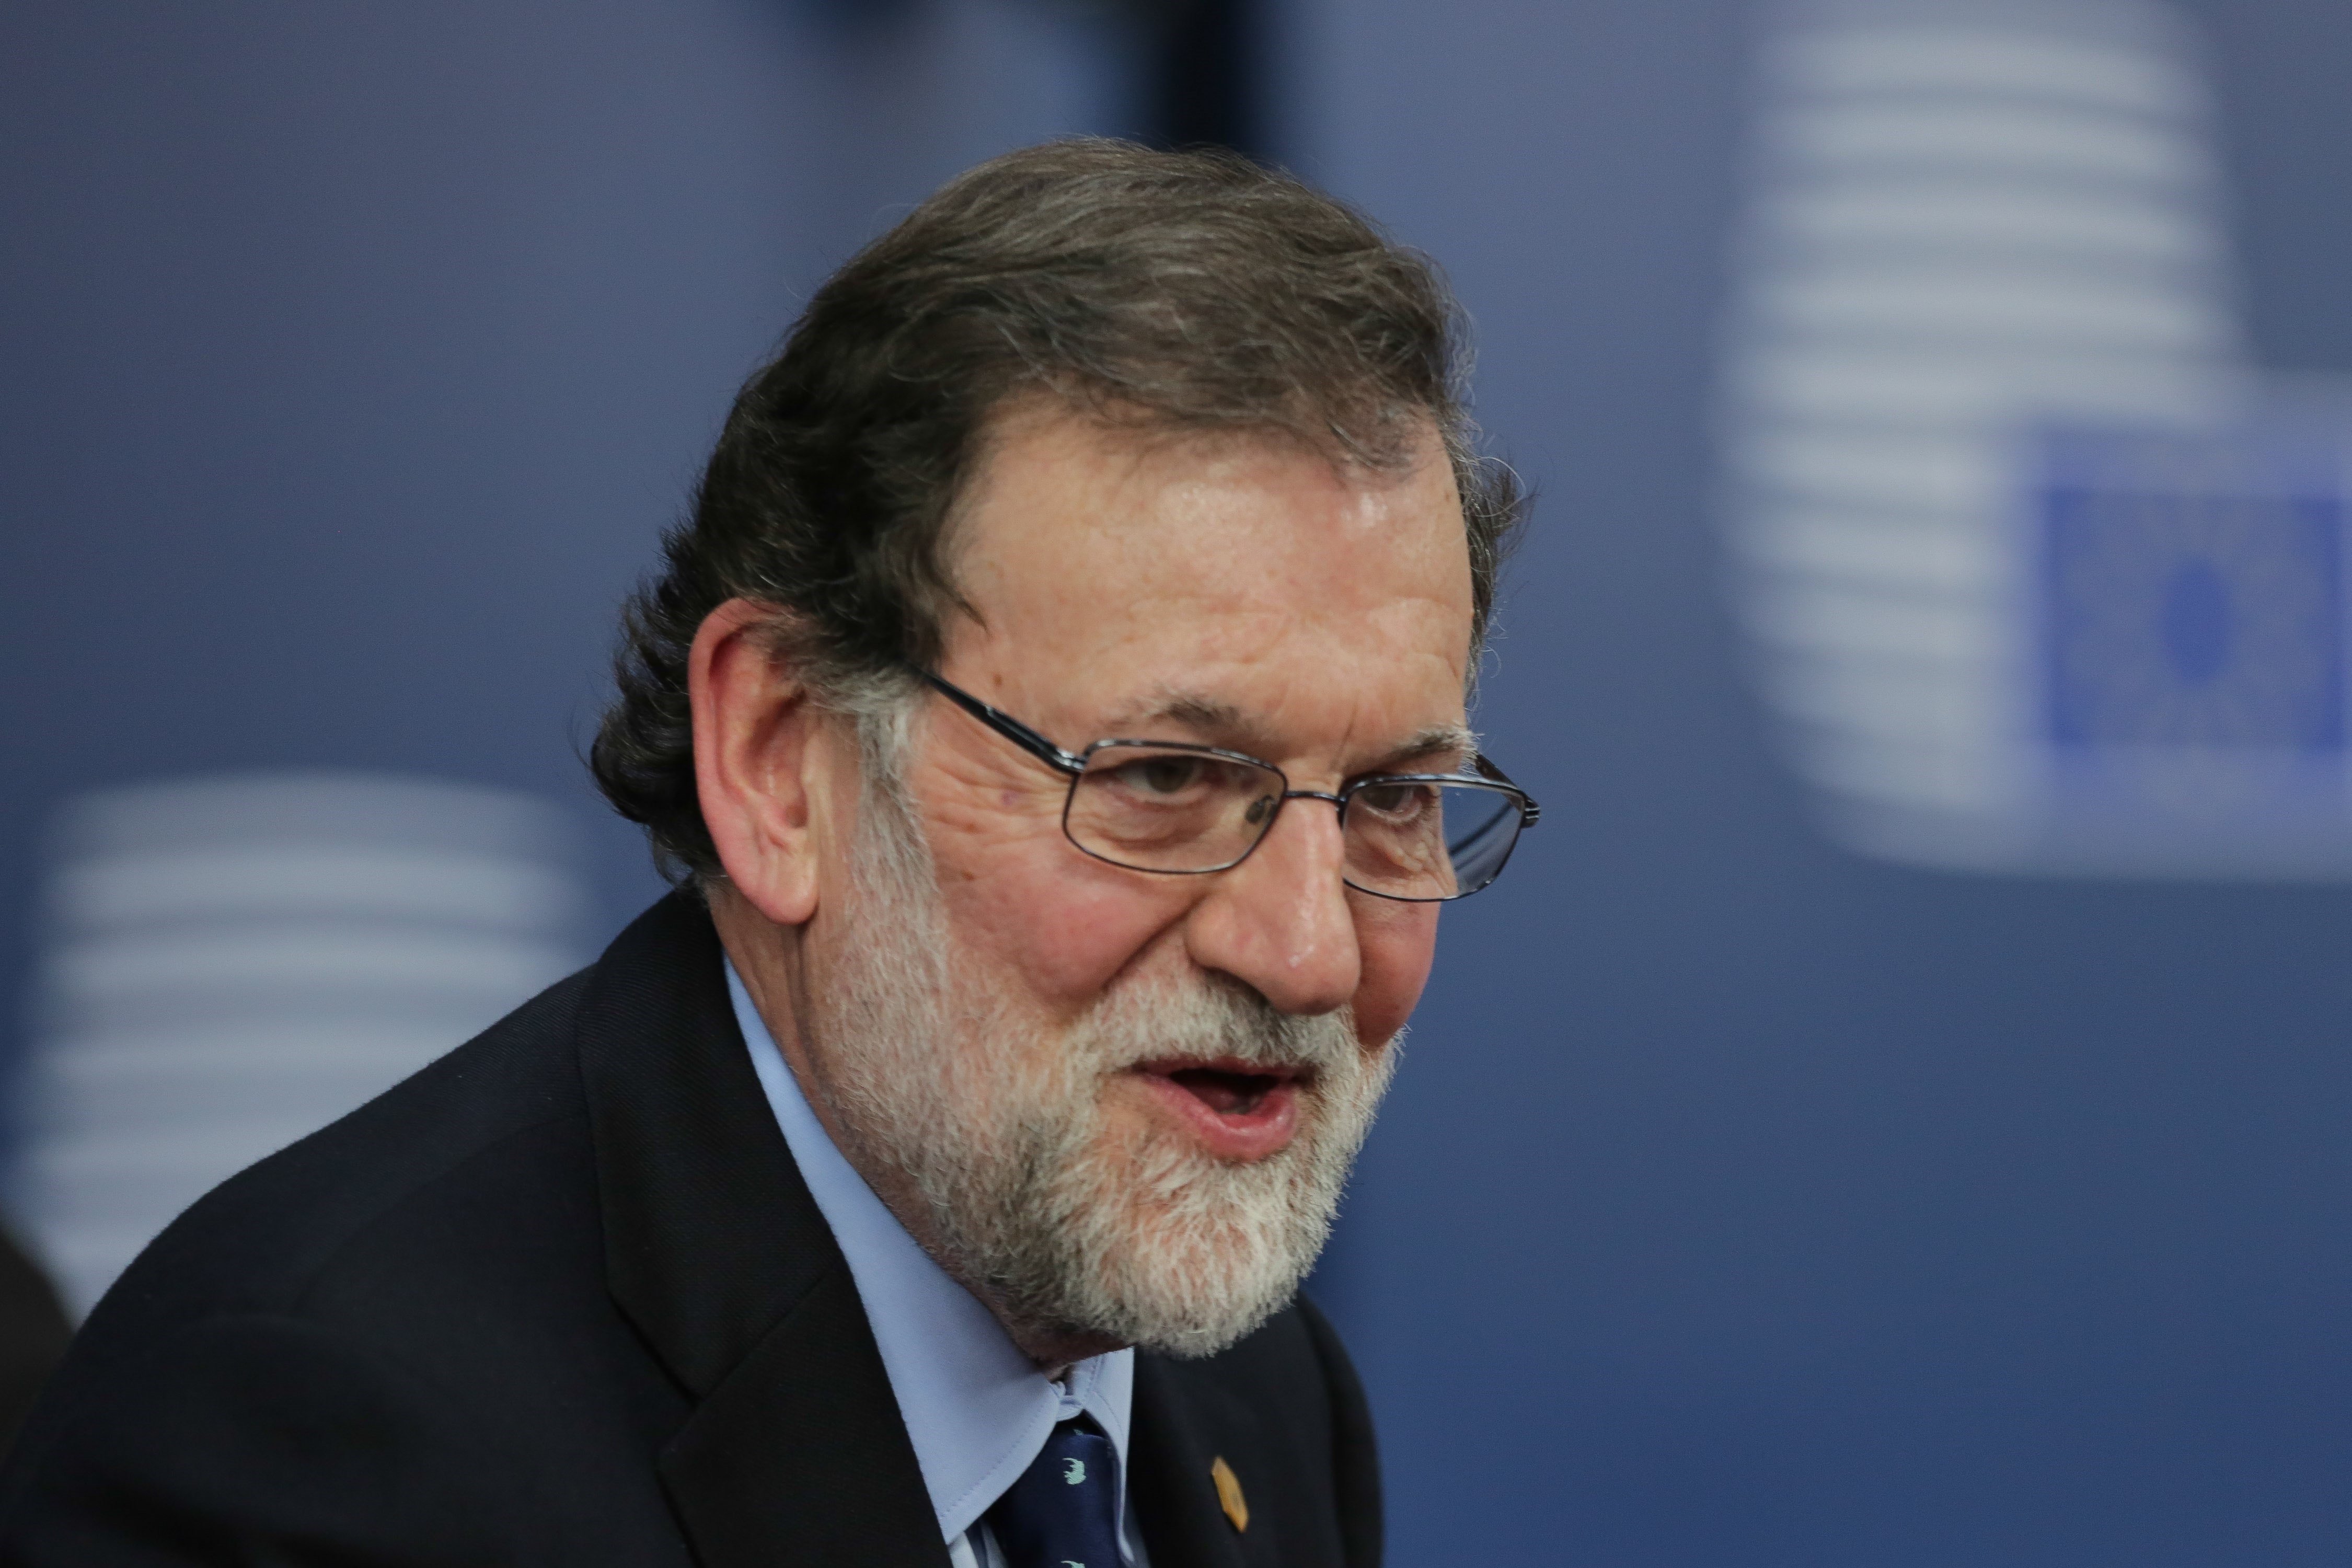 ¿Crees que el gobierno español acabará impidiendo la restitución de los consellers?